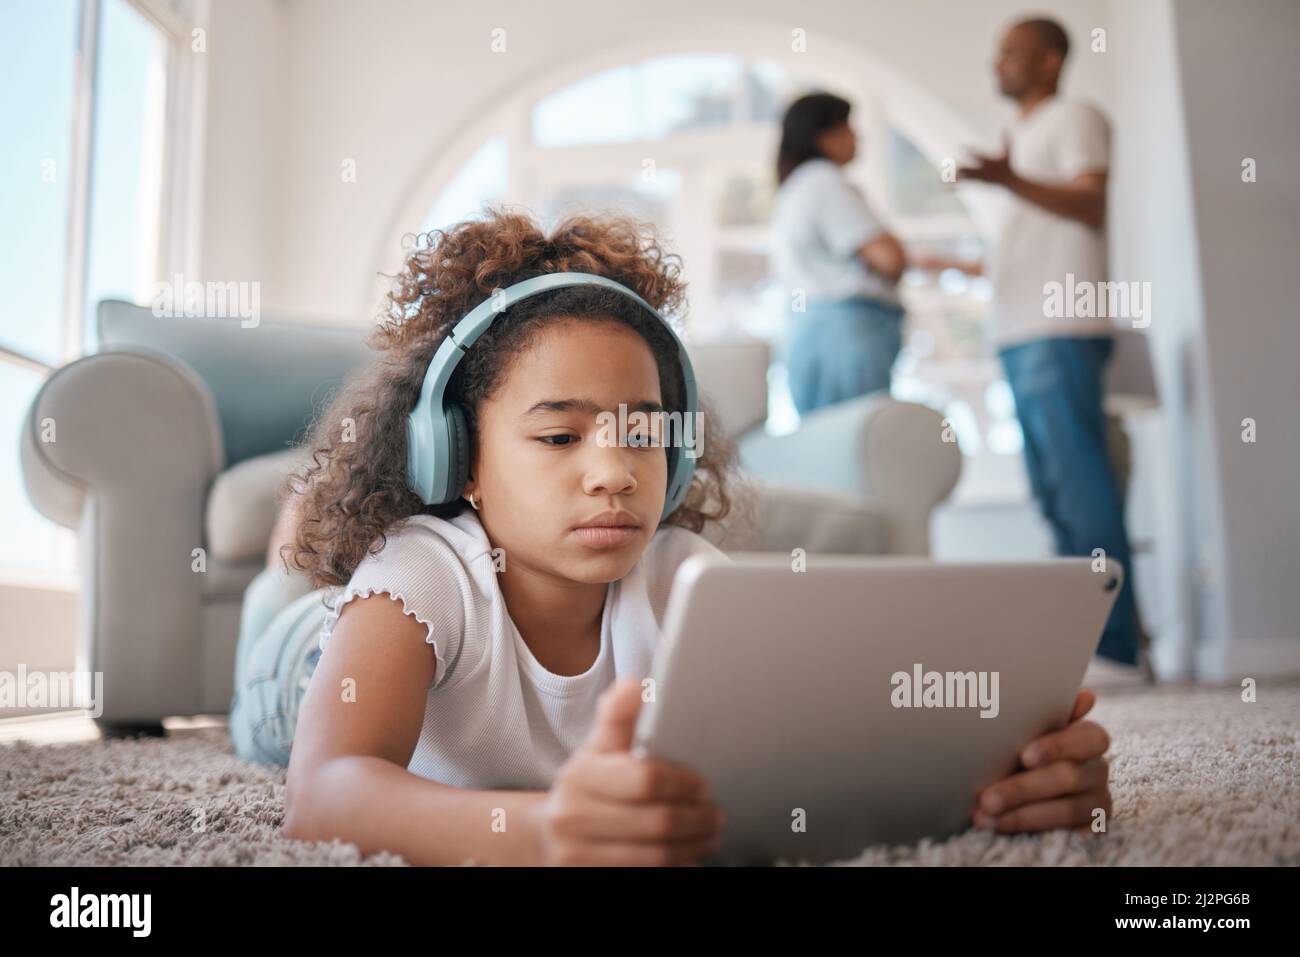 Les choses ont l'air rocailleuses. Prise de vue d'une jeune fille utilisant une tablette numérique pendant que ses parents arguent. Banque D'Images